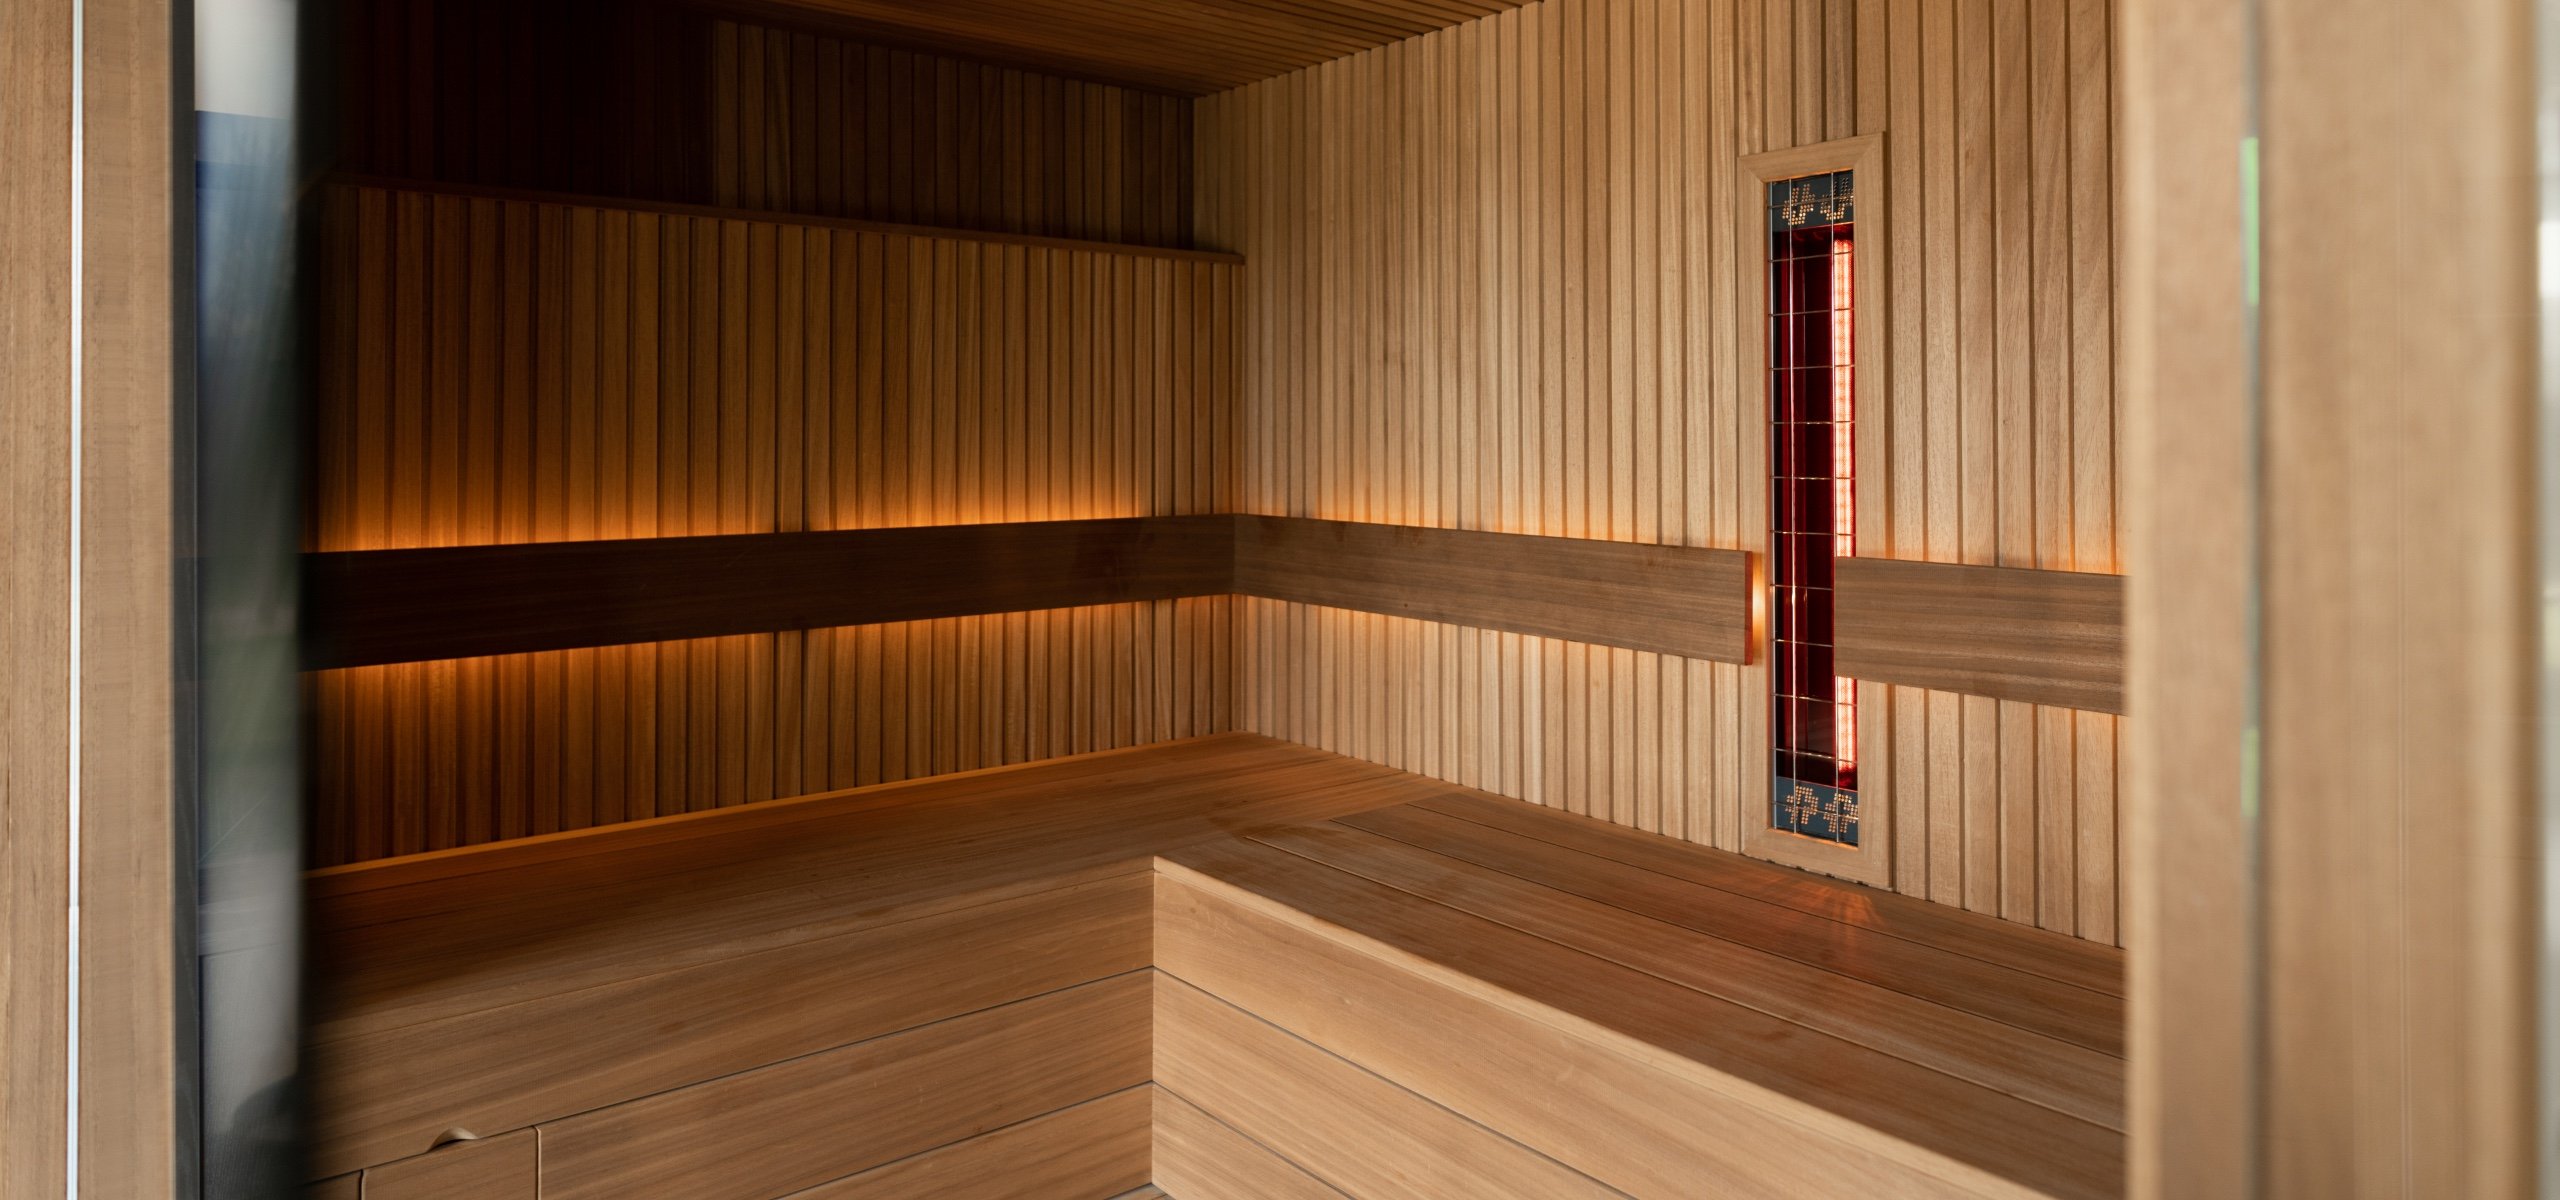 beddengoed elkaar Beperkingen Sauna op maat | Eigen werkplaats | Luxe maatwerk sauna's | Bronkhorst